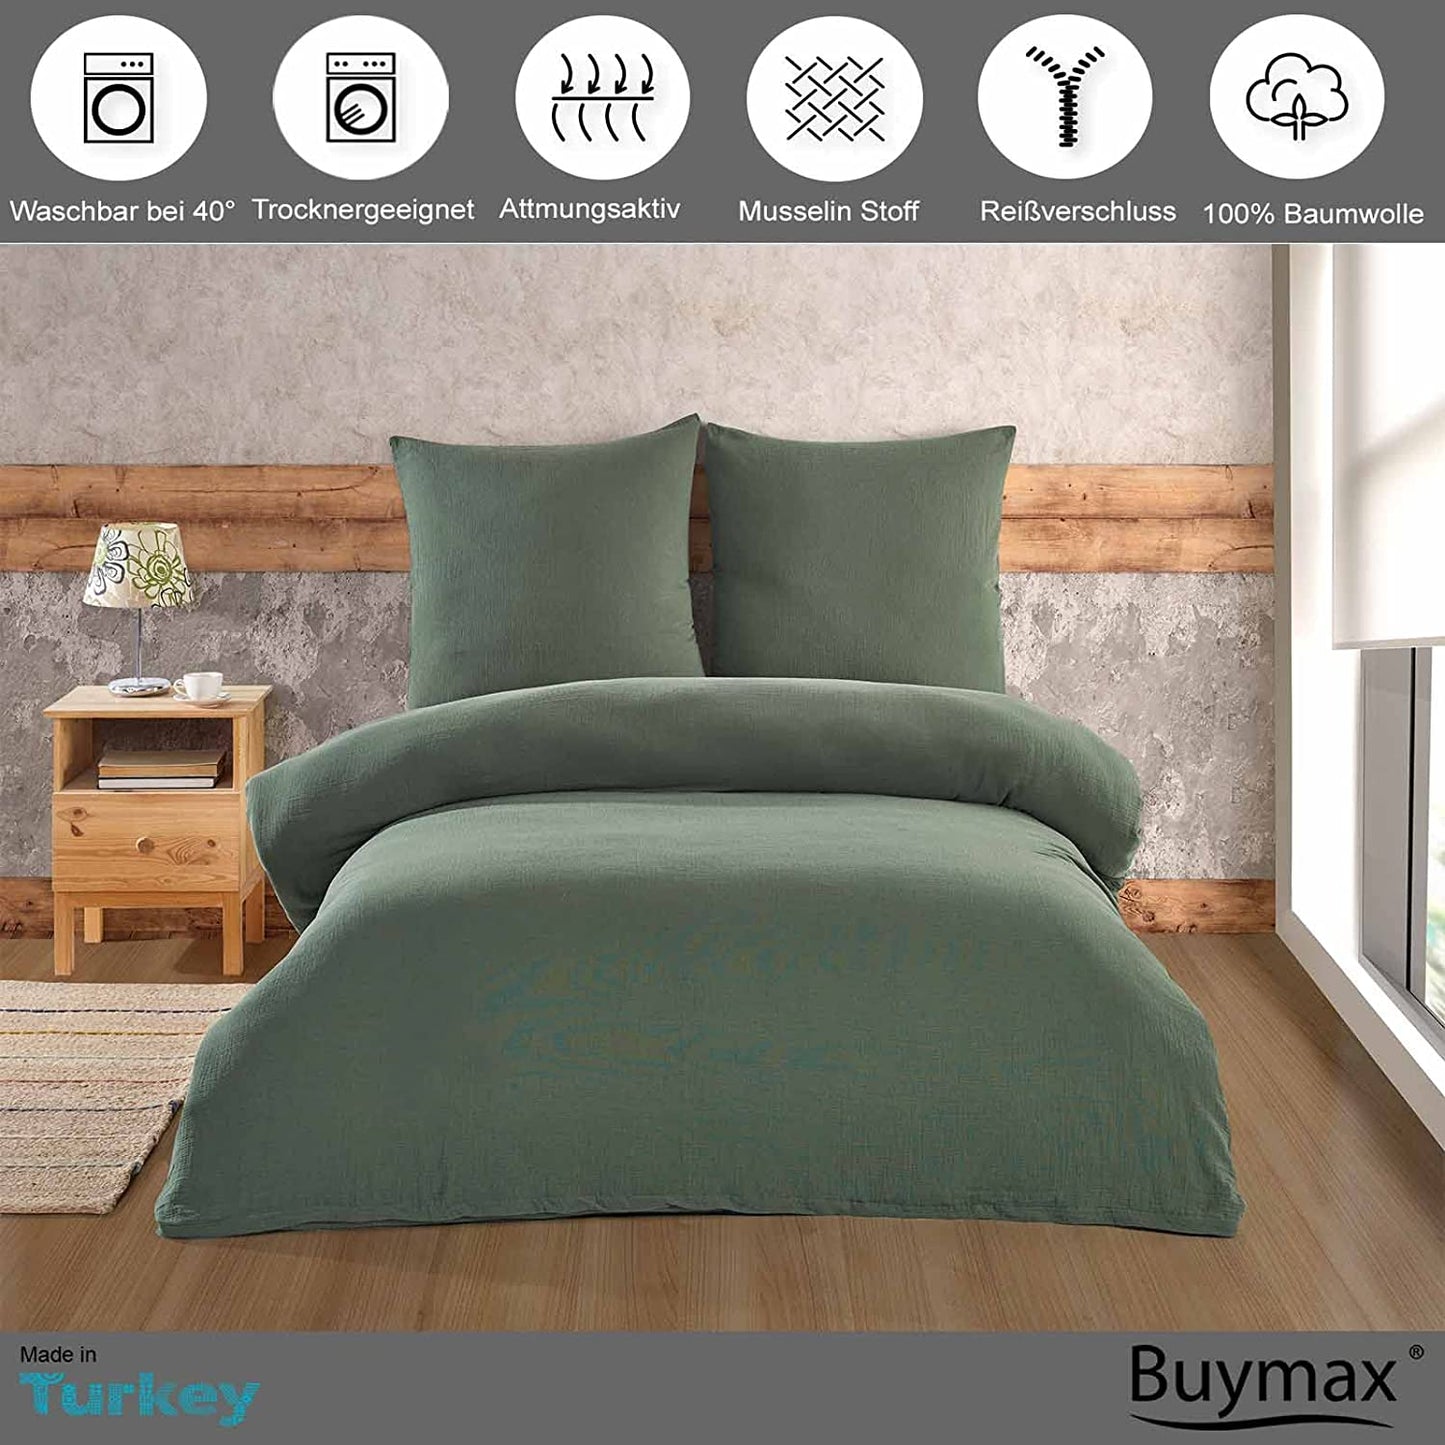 Buymax® Musselin Bettwäsche Set aus Baumwolle, Grün, 200x200 cm